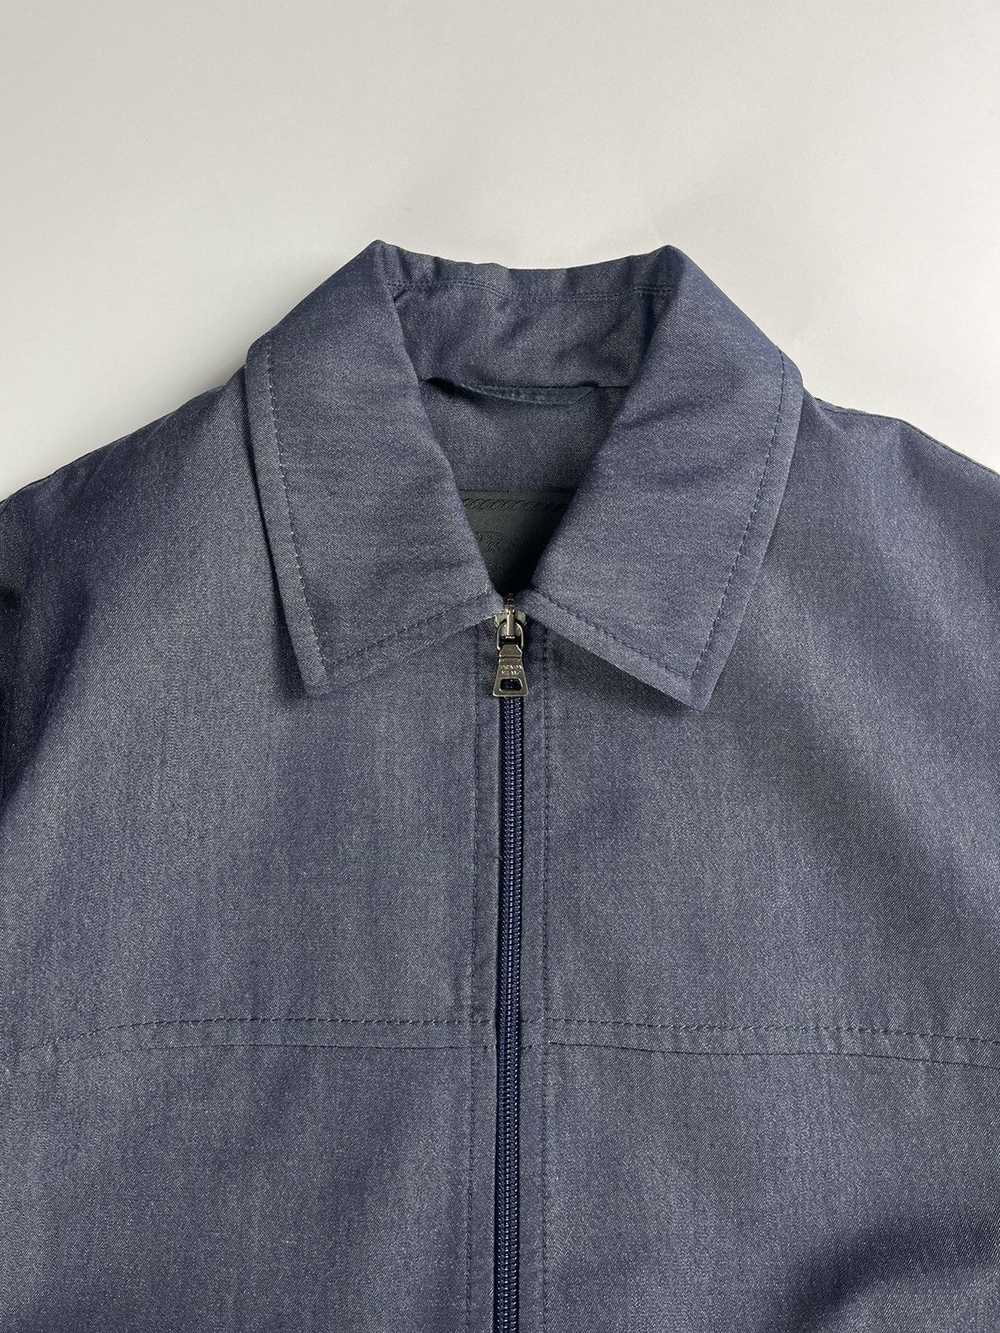 Prada Prada Double Zip Linen Jacket FW 1998 - image 7